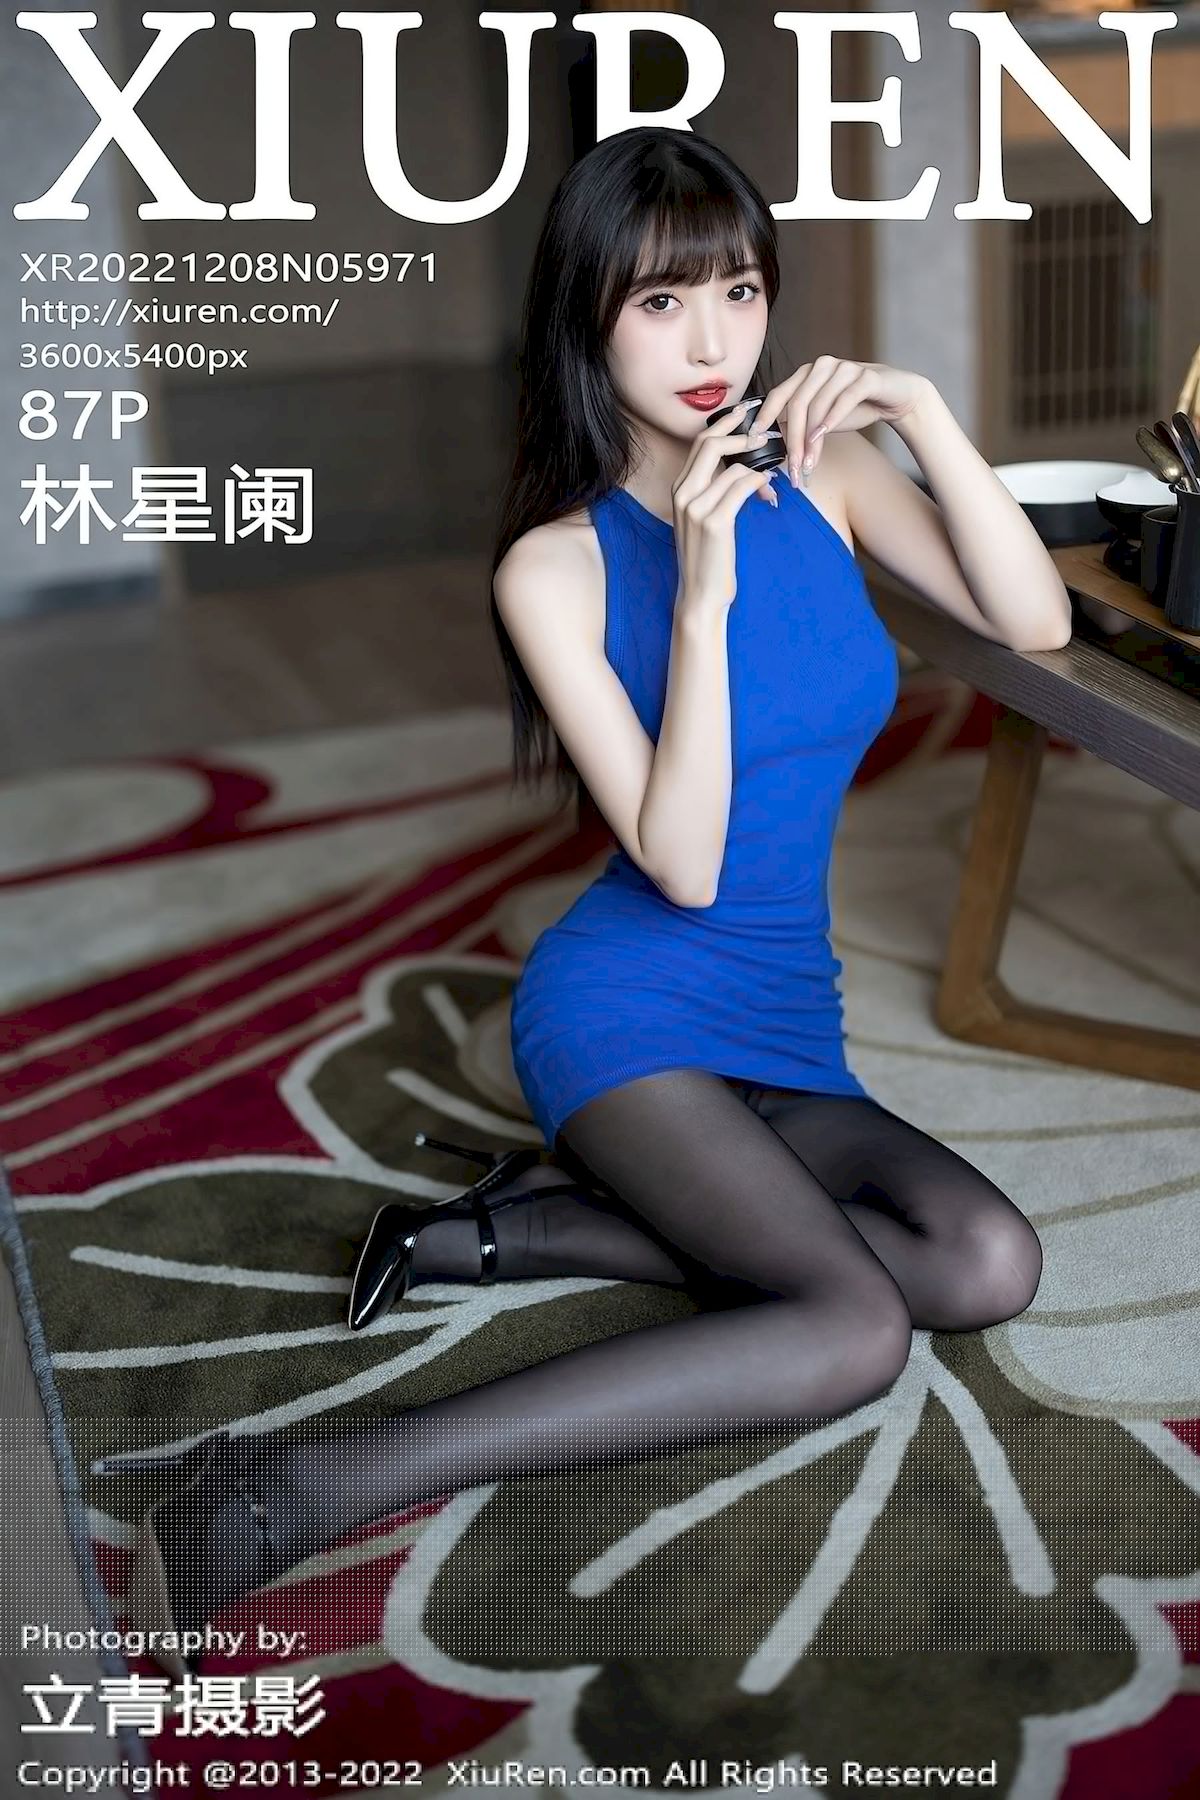 林星阑蓝色连衣裙搭配魅惑黑丝性感写真